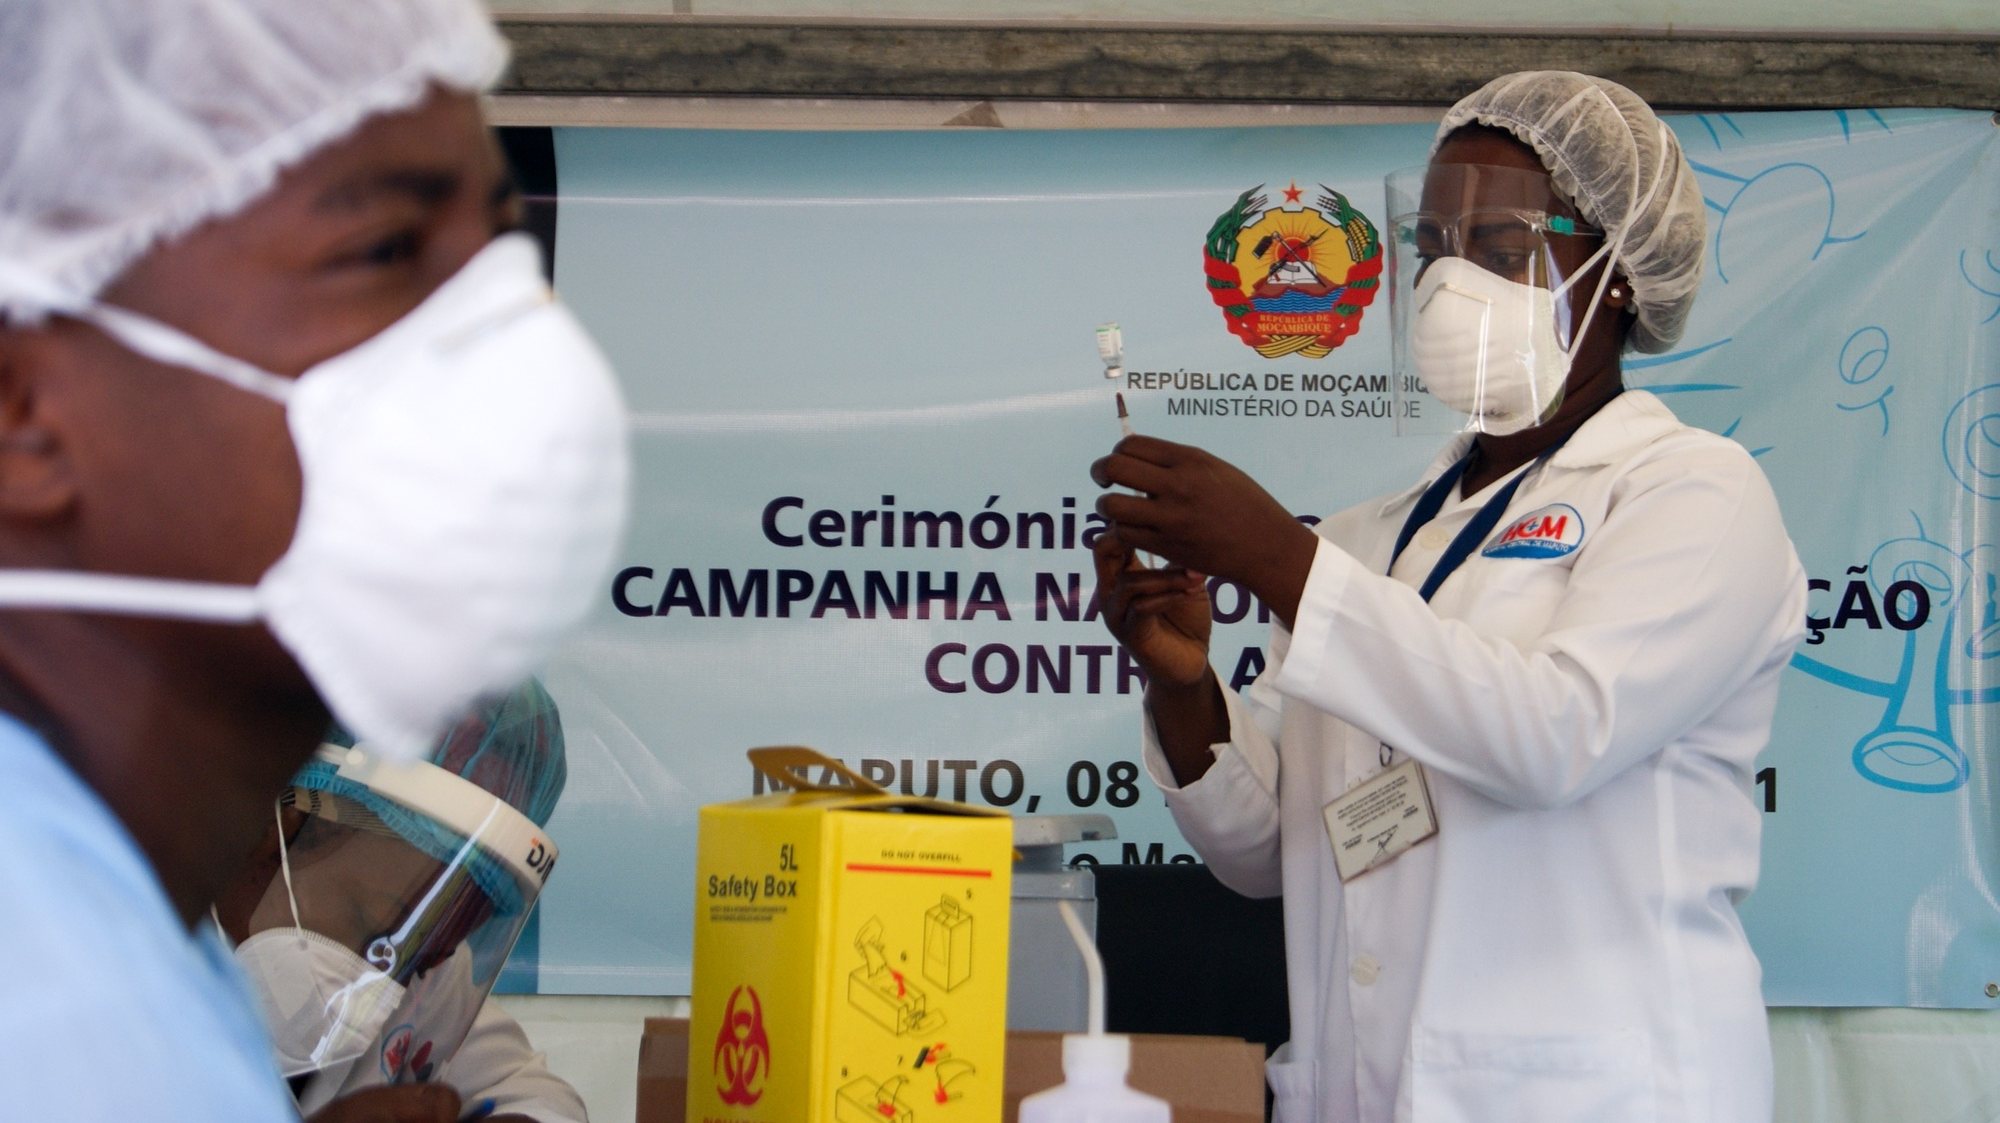 Início da vacinação contra a covid-19, em Maputo, Moçambique, 08 de março de 2021. O plano de vacinação lançado hoje está estimado em quase dois mil milhões de meticais (23 milhões de euros) e vai dar prioridade aos profissionais que estão na linha da frente do combate à epidemia. LUÍSA NHANTUMBO/LUSA